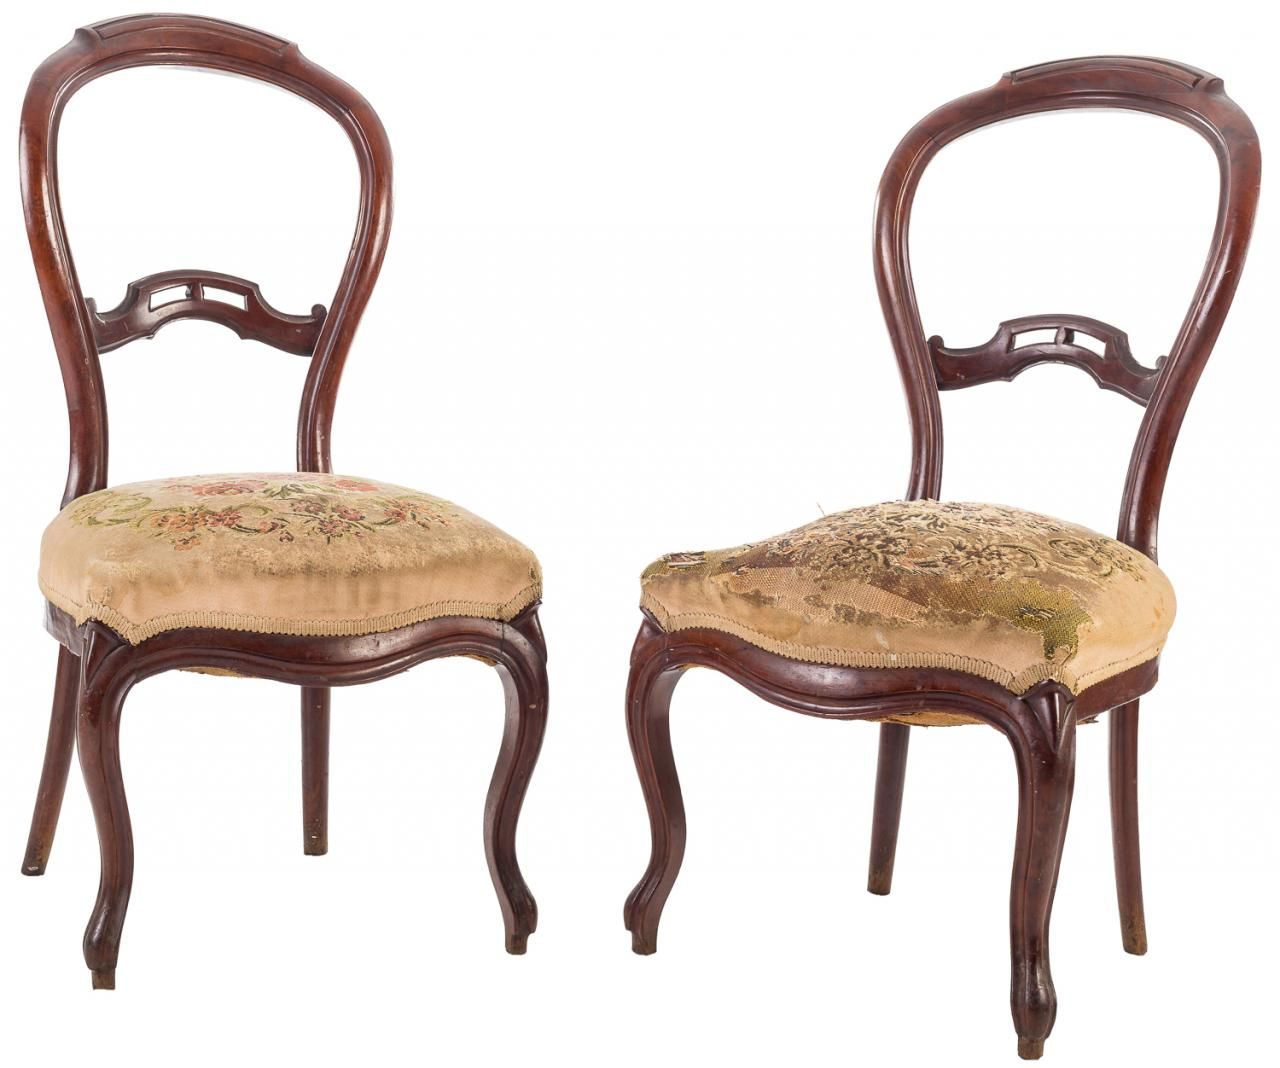 Null 一对伊丽莎白时代的桃花心木椅子，有雕刻的椅背和小点装饰。中。S. XIX.

90 x 45 x 49厘米

损坏的软垫之一。